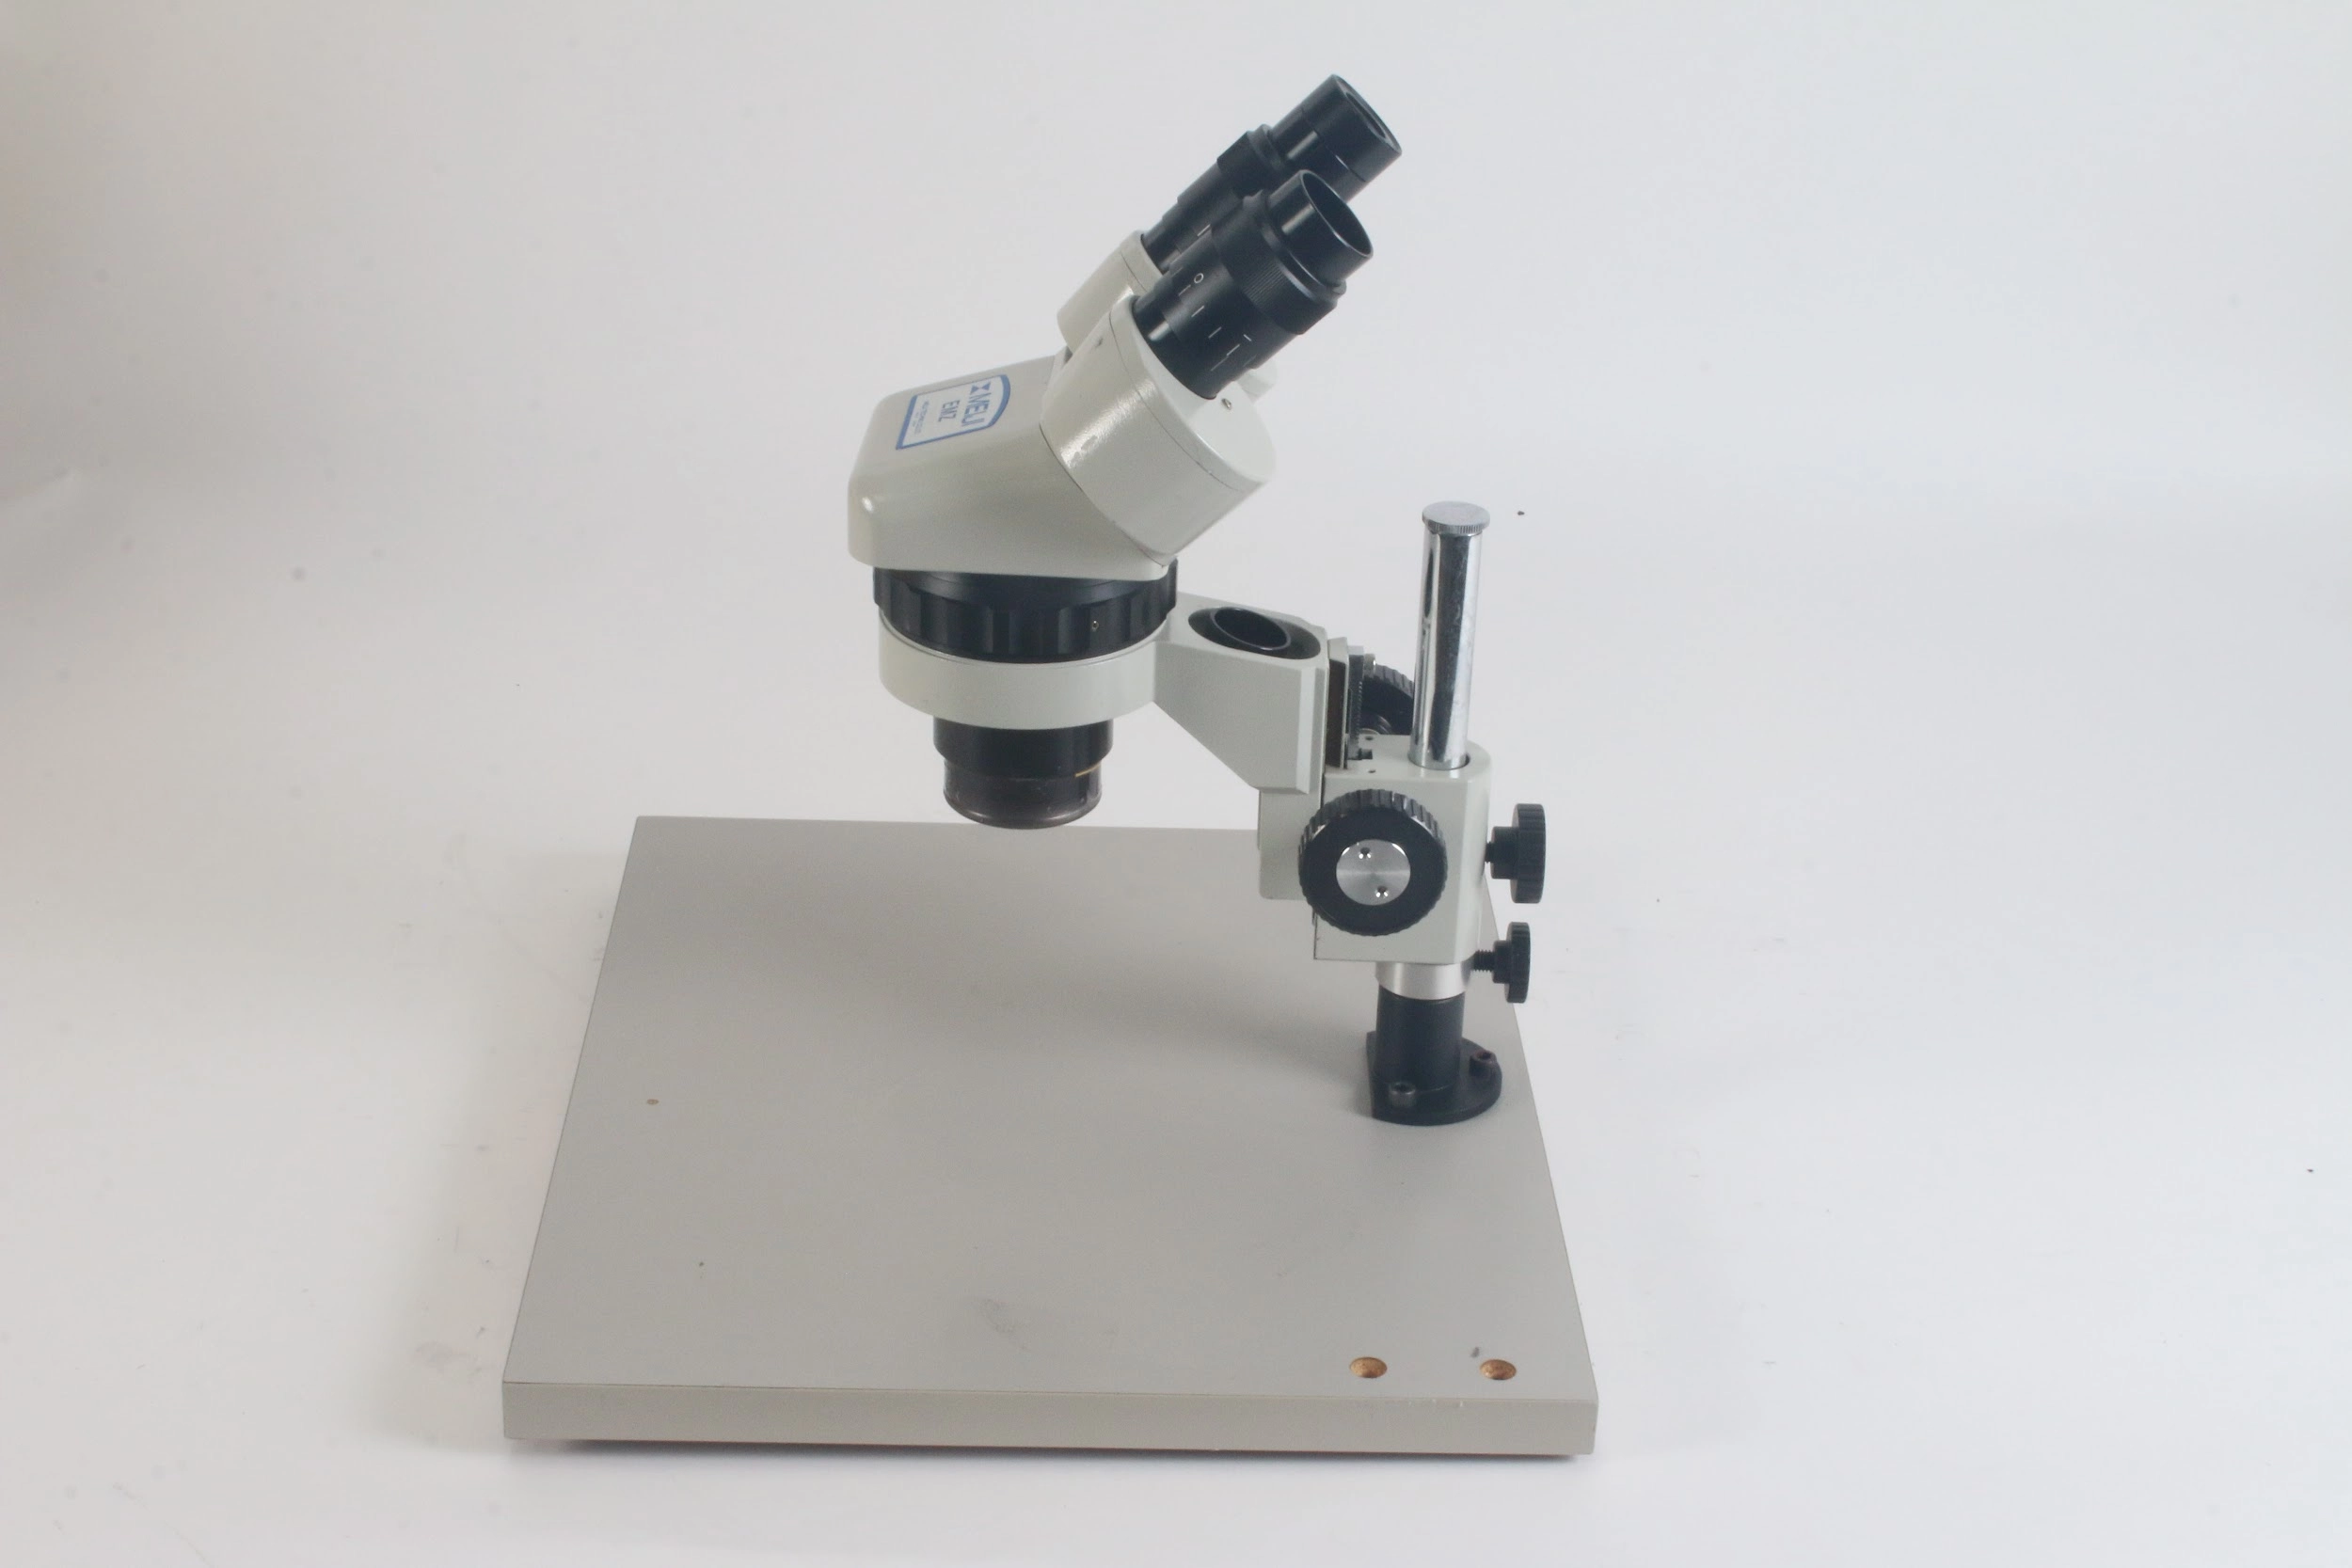 Meiji EMZ Stereo Zoom Microscope with 1x SWF10X Objective Lens